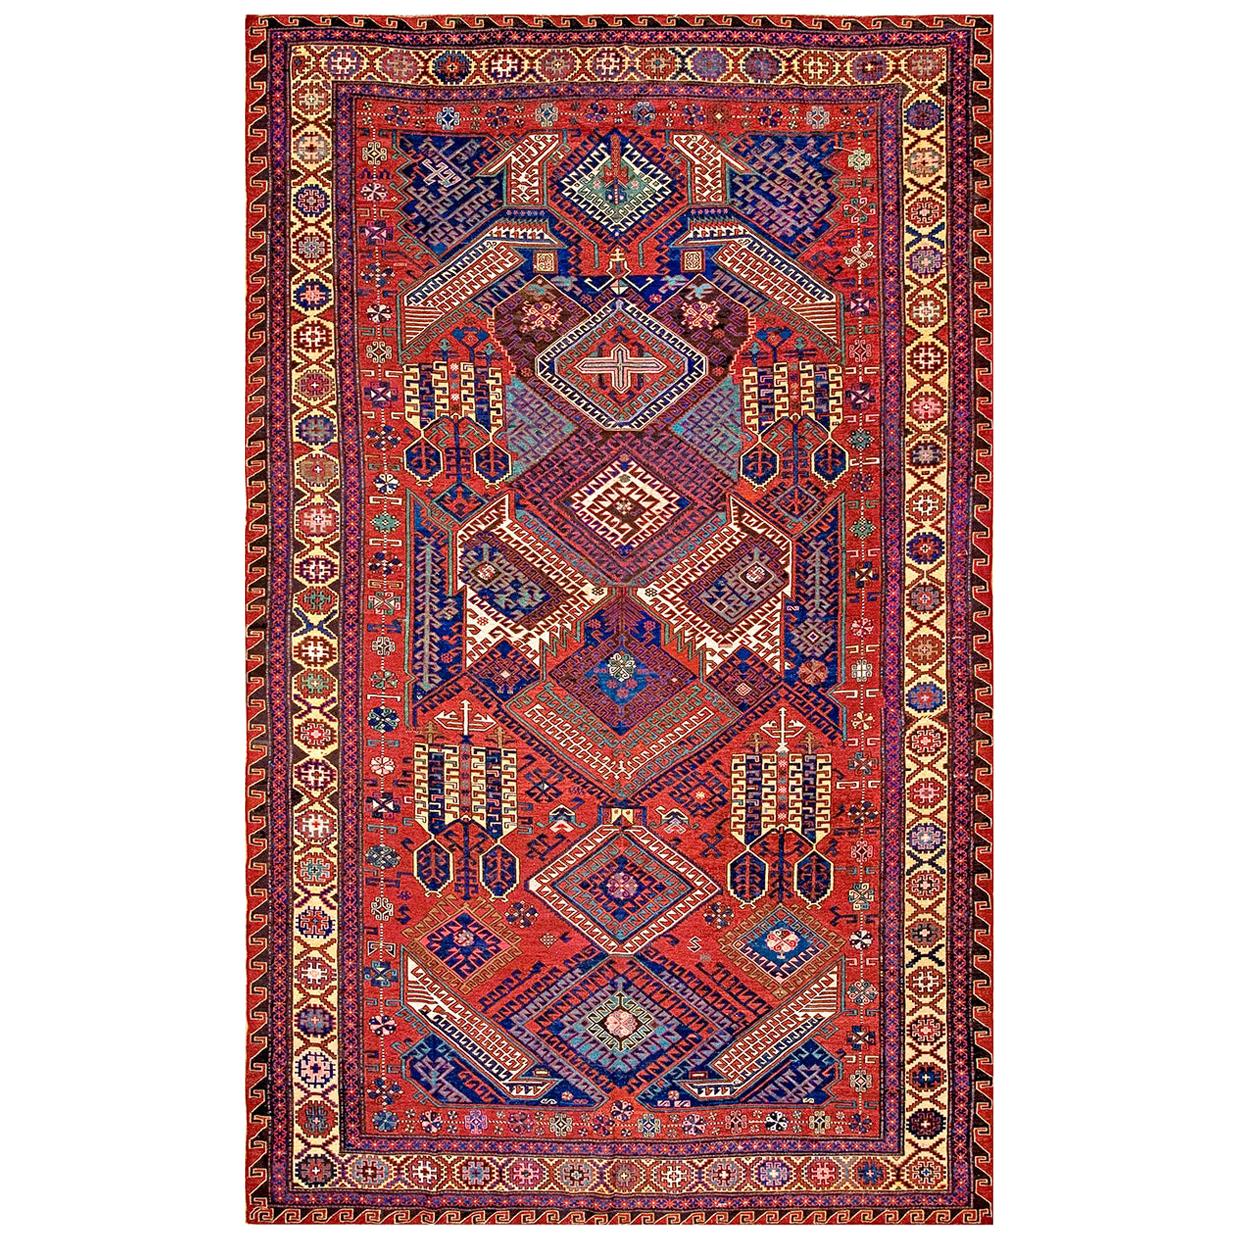 19th Century Caucasian Dragon Sumak Carpet ( 7'4" x 11'10" - 223 x 360 ) For Sale